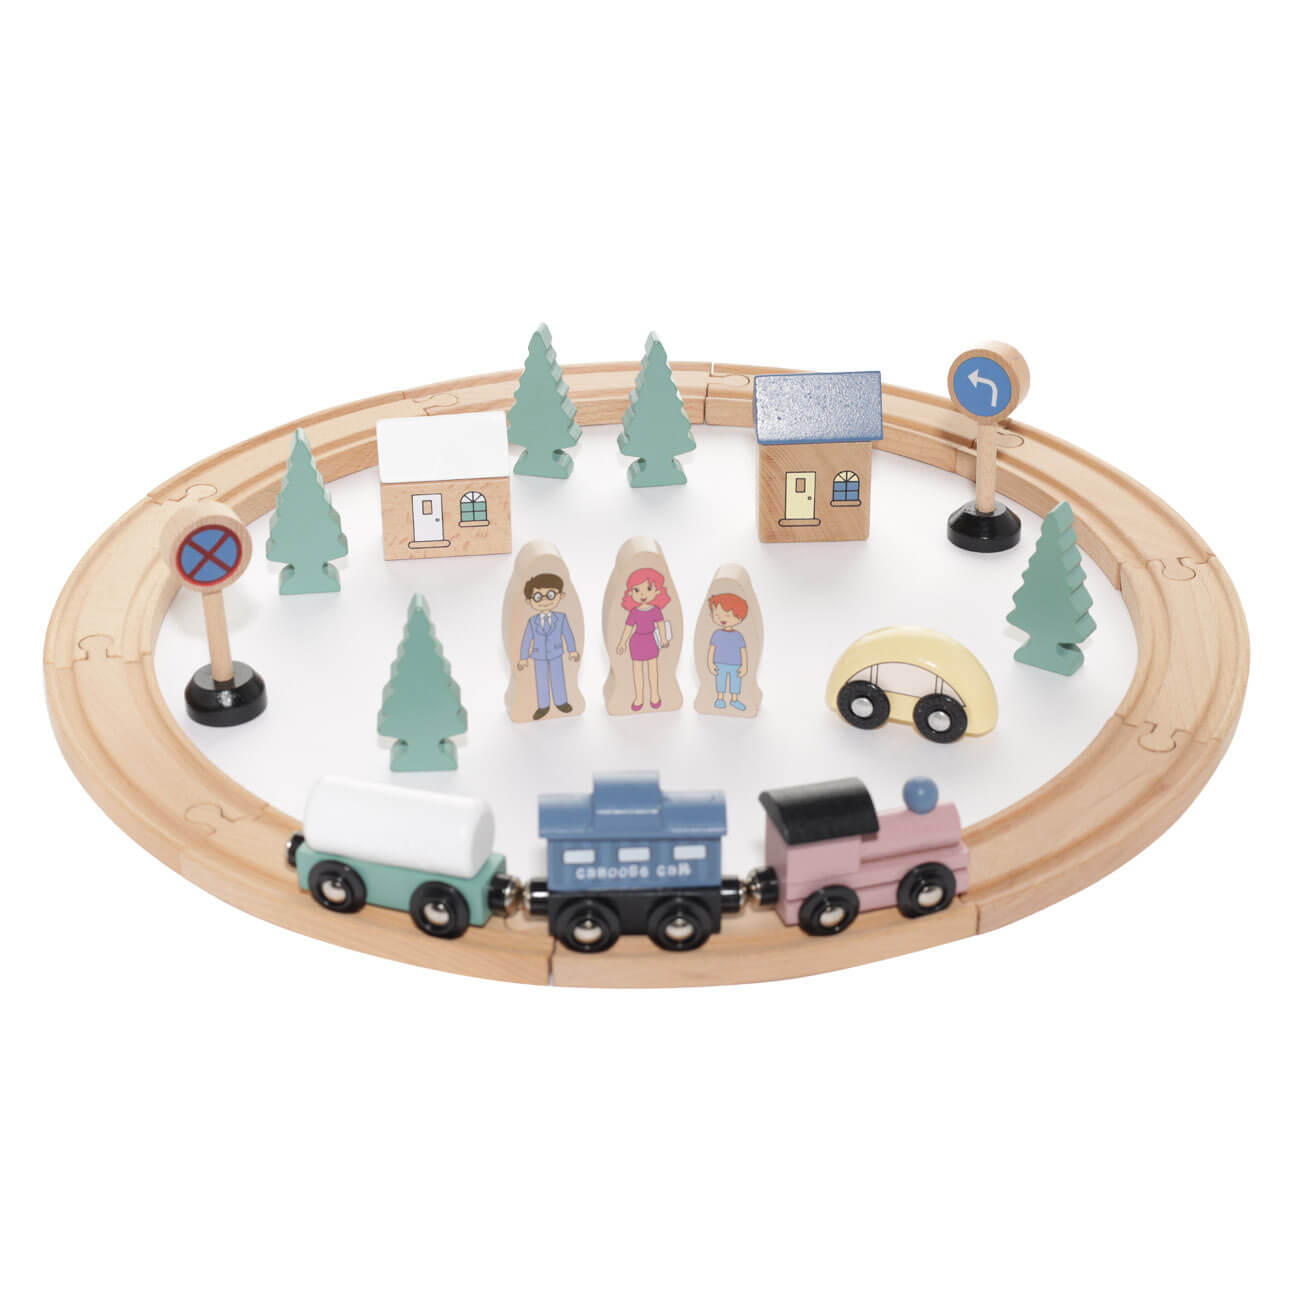 Железная дорога игрушечная, 28 см, дерево, Город, Game железная дорога путешествие на море поезд на батарейках 92 элемента